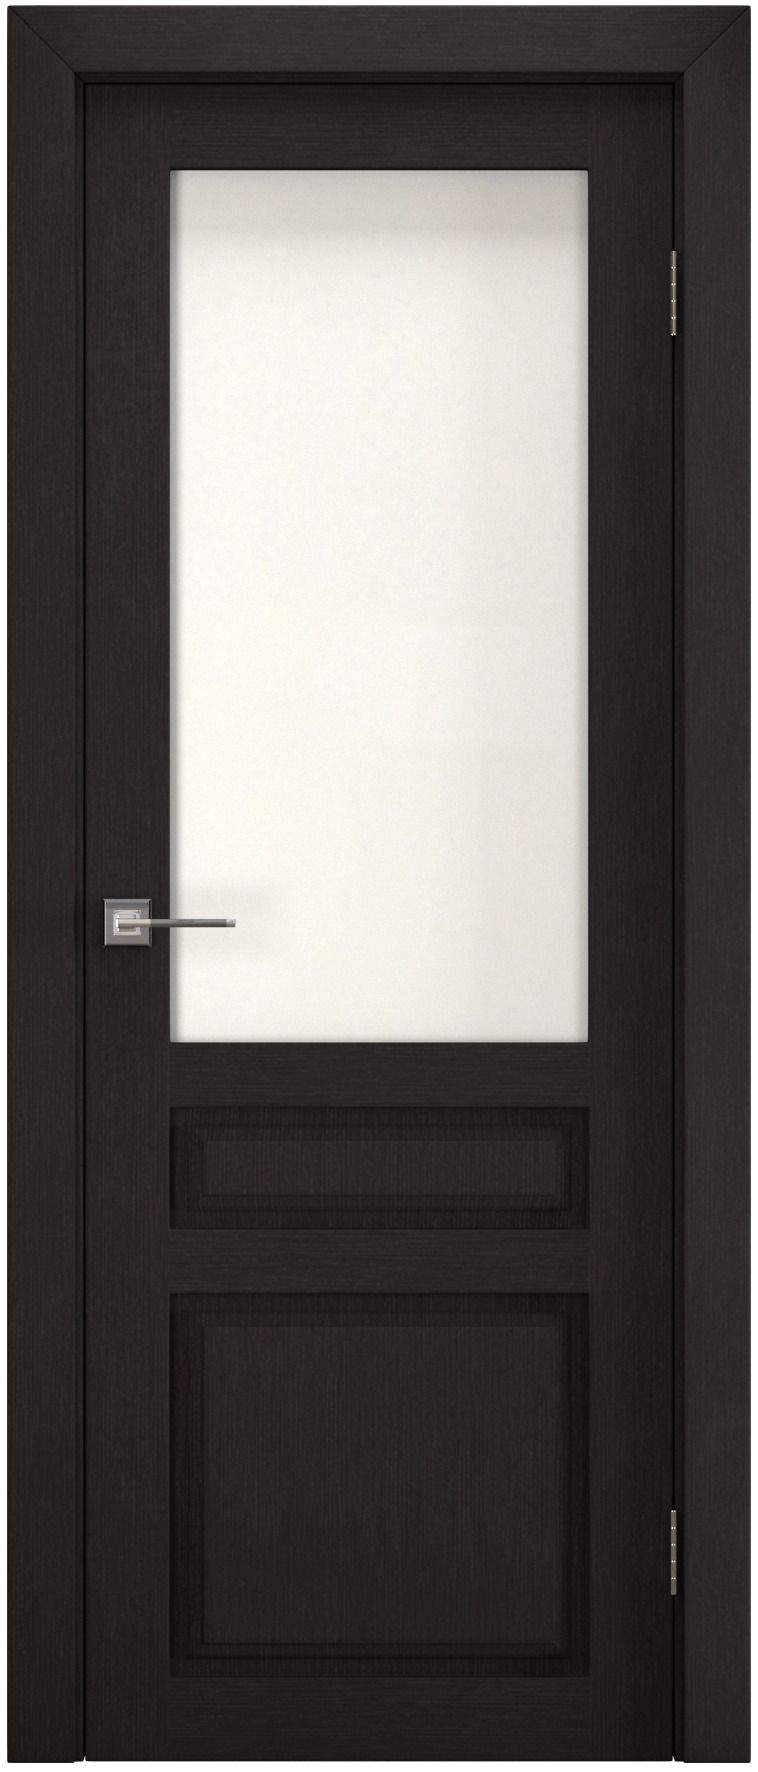 Полотно дверное остекленное Эко-шпон Британь 2000*600 Каштан, ст. рисунок "Хрусталь"